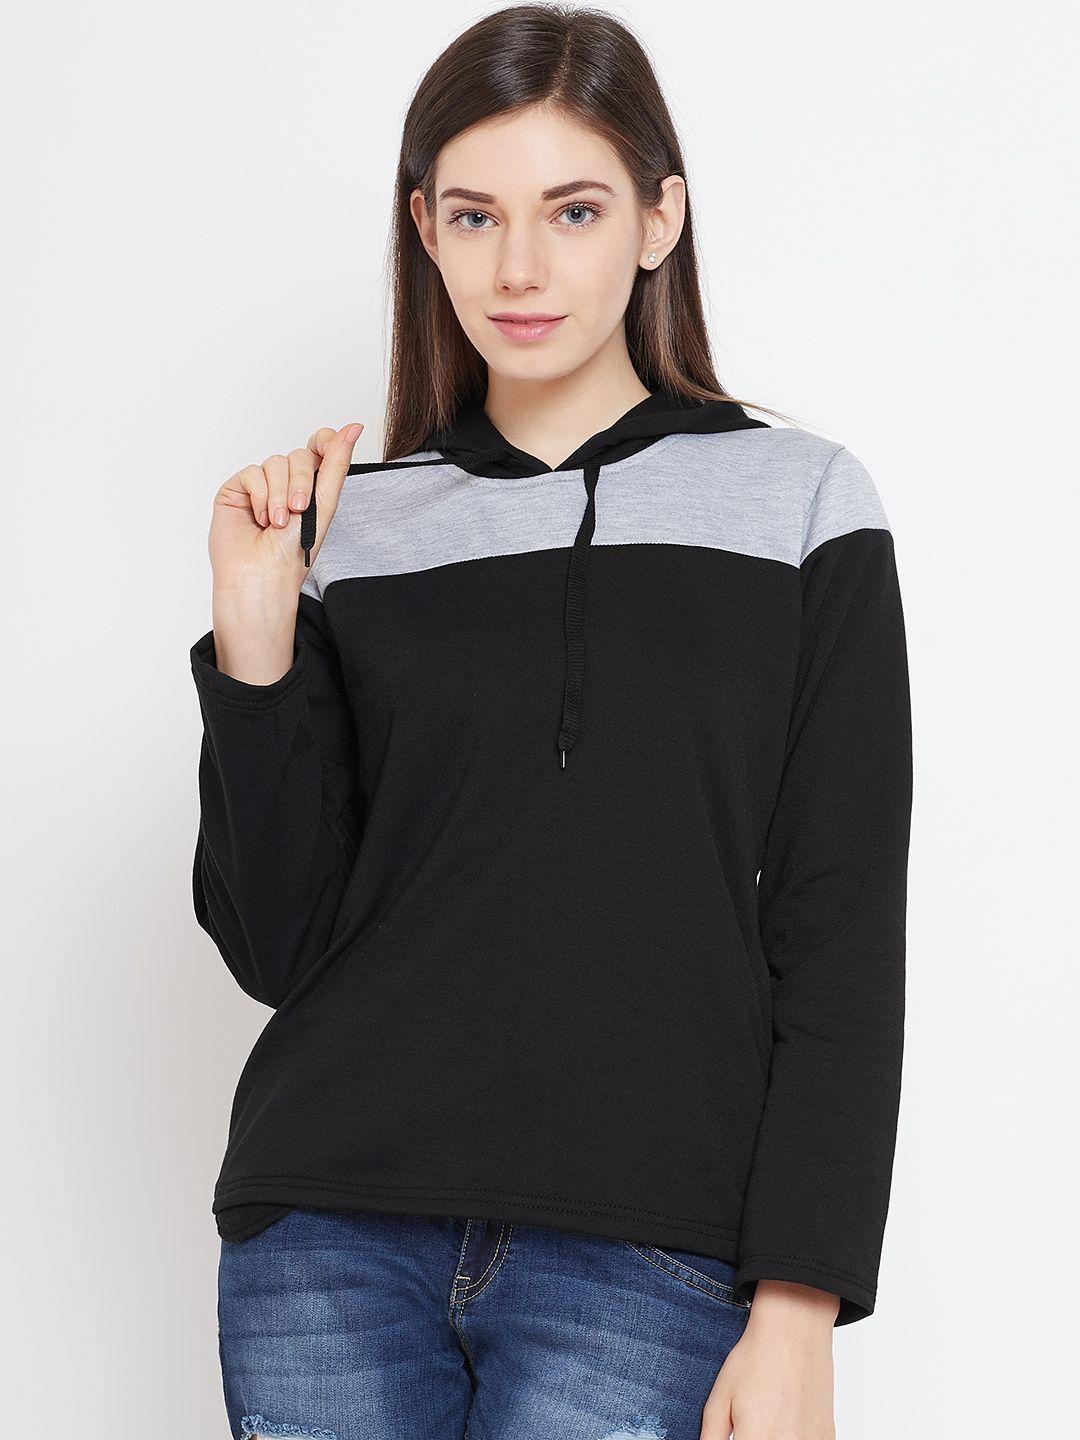 belle-fille-women-black-&-grey-melange-colourblocked-hooded-sweatshirt